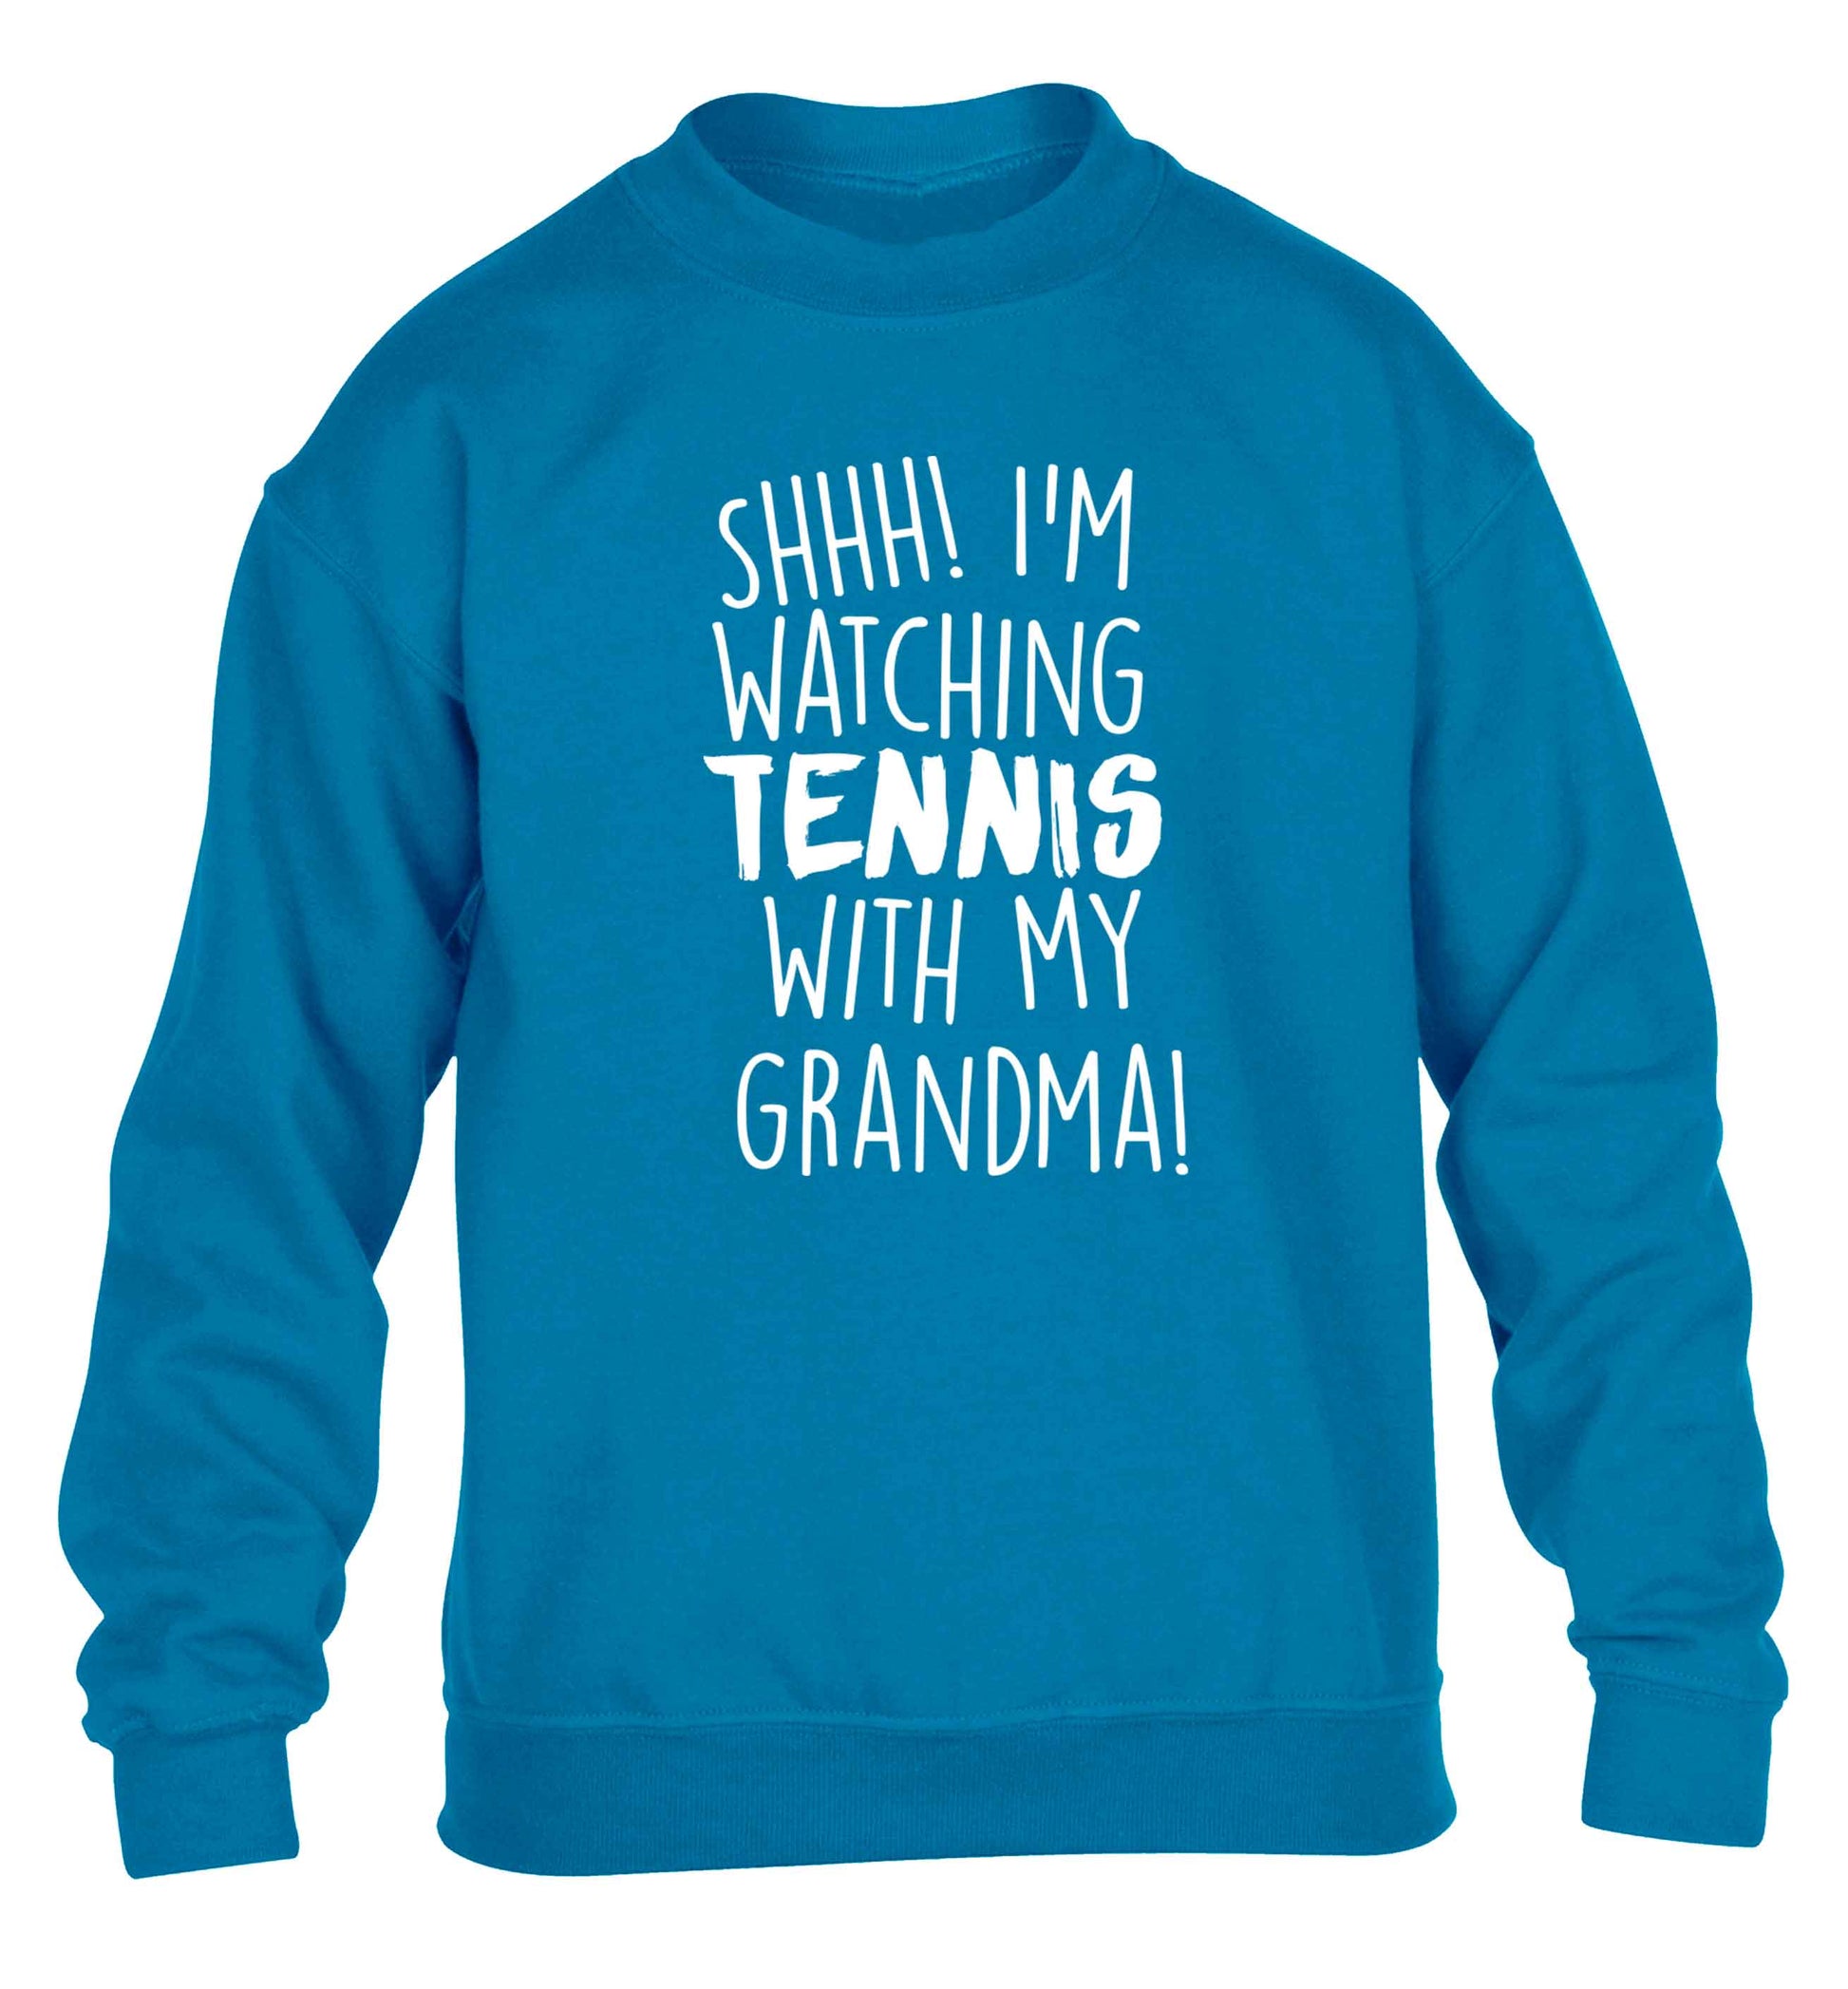 Shh! I'm watching tennis with my grandma! children's blue sweater 12-13 Years